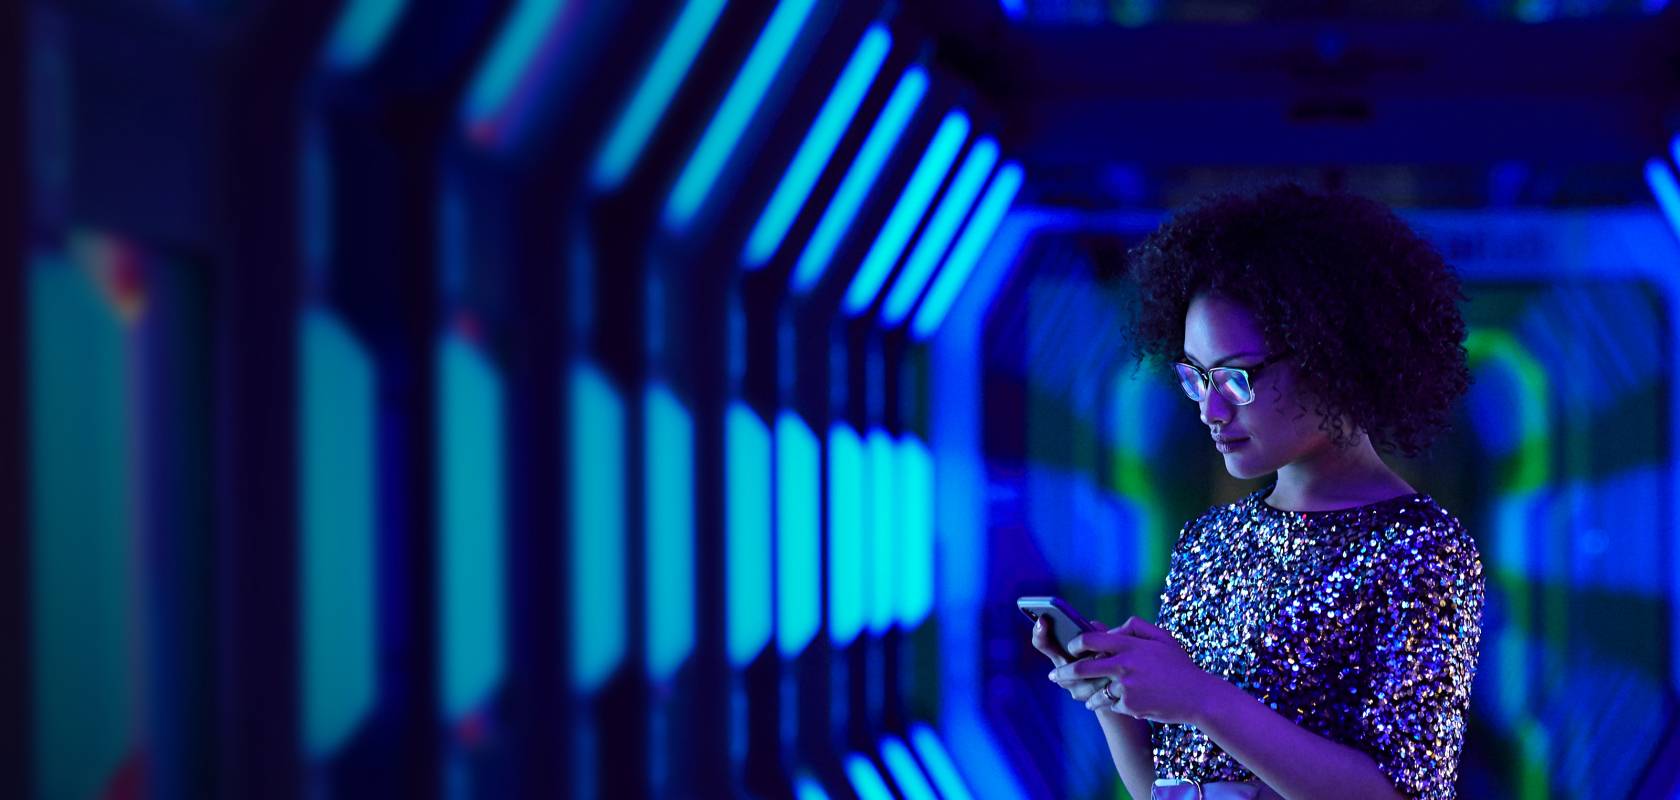 Frau im blauen Tunnel mit Smartphone in der Hand